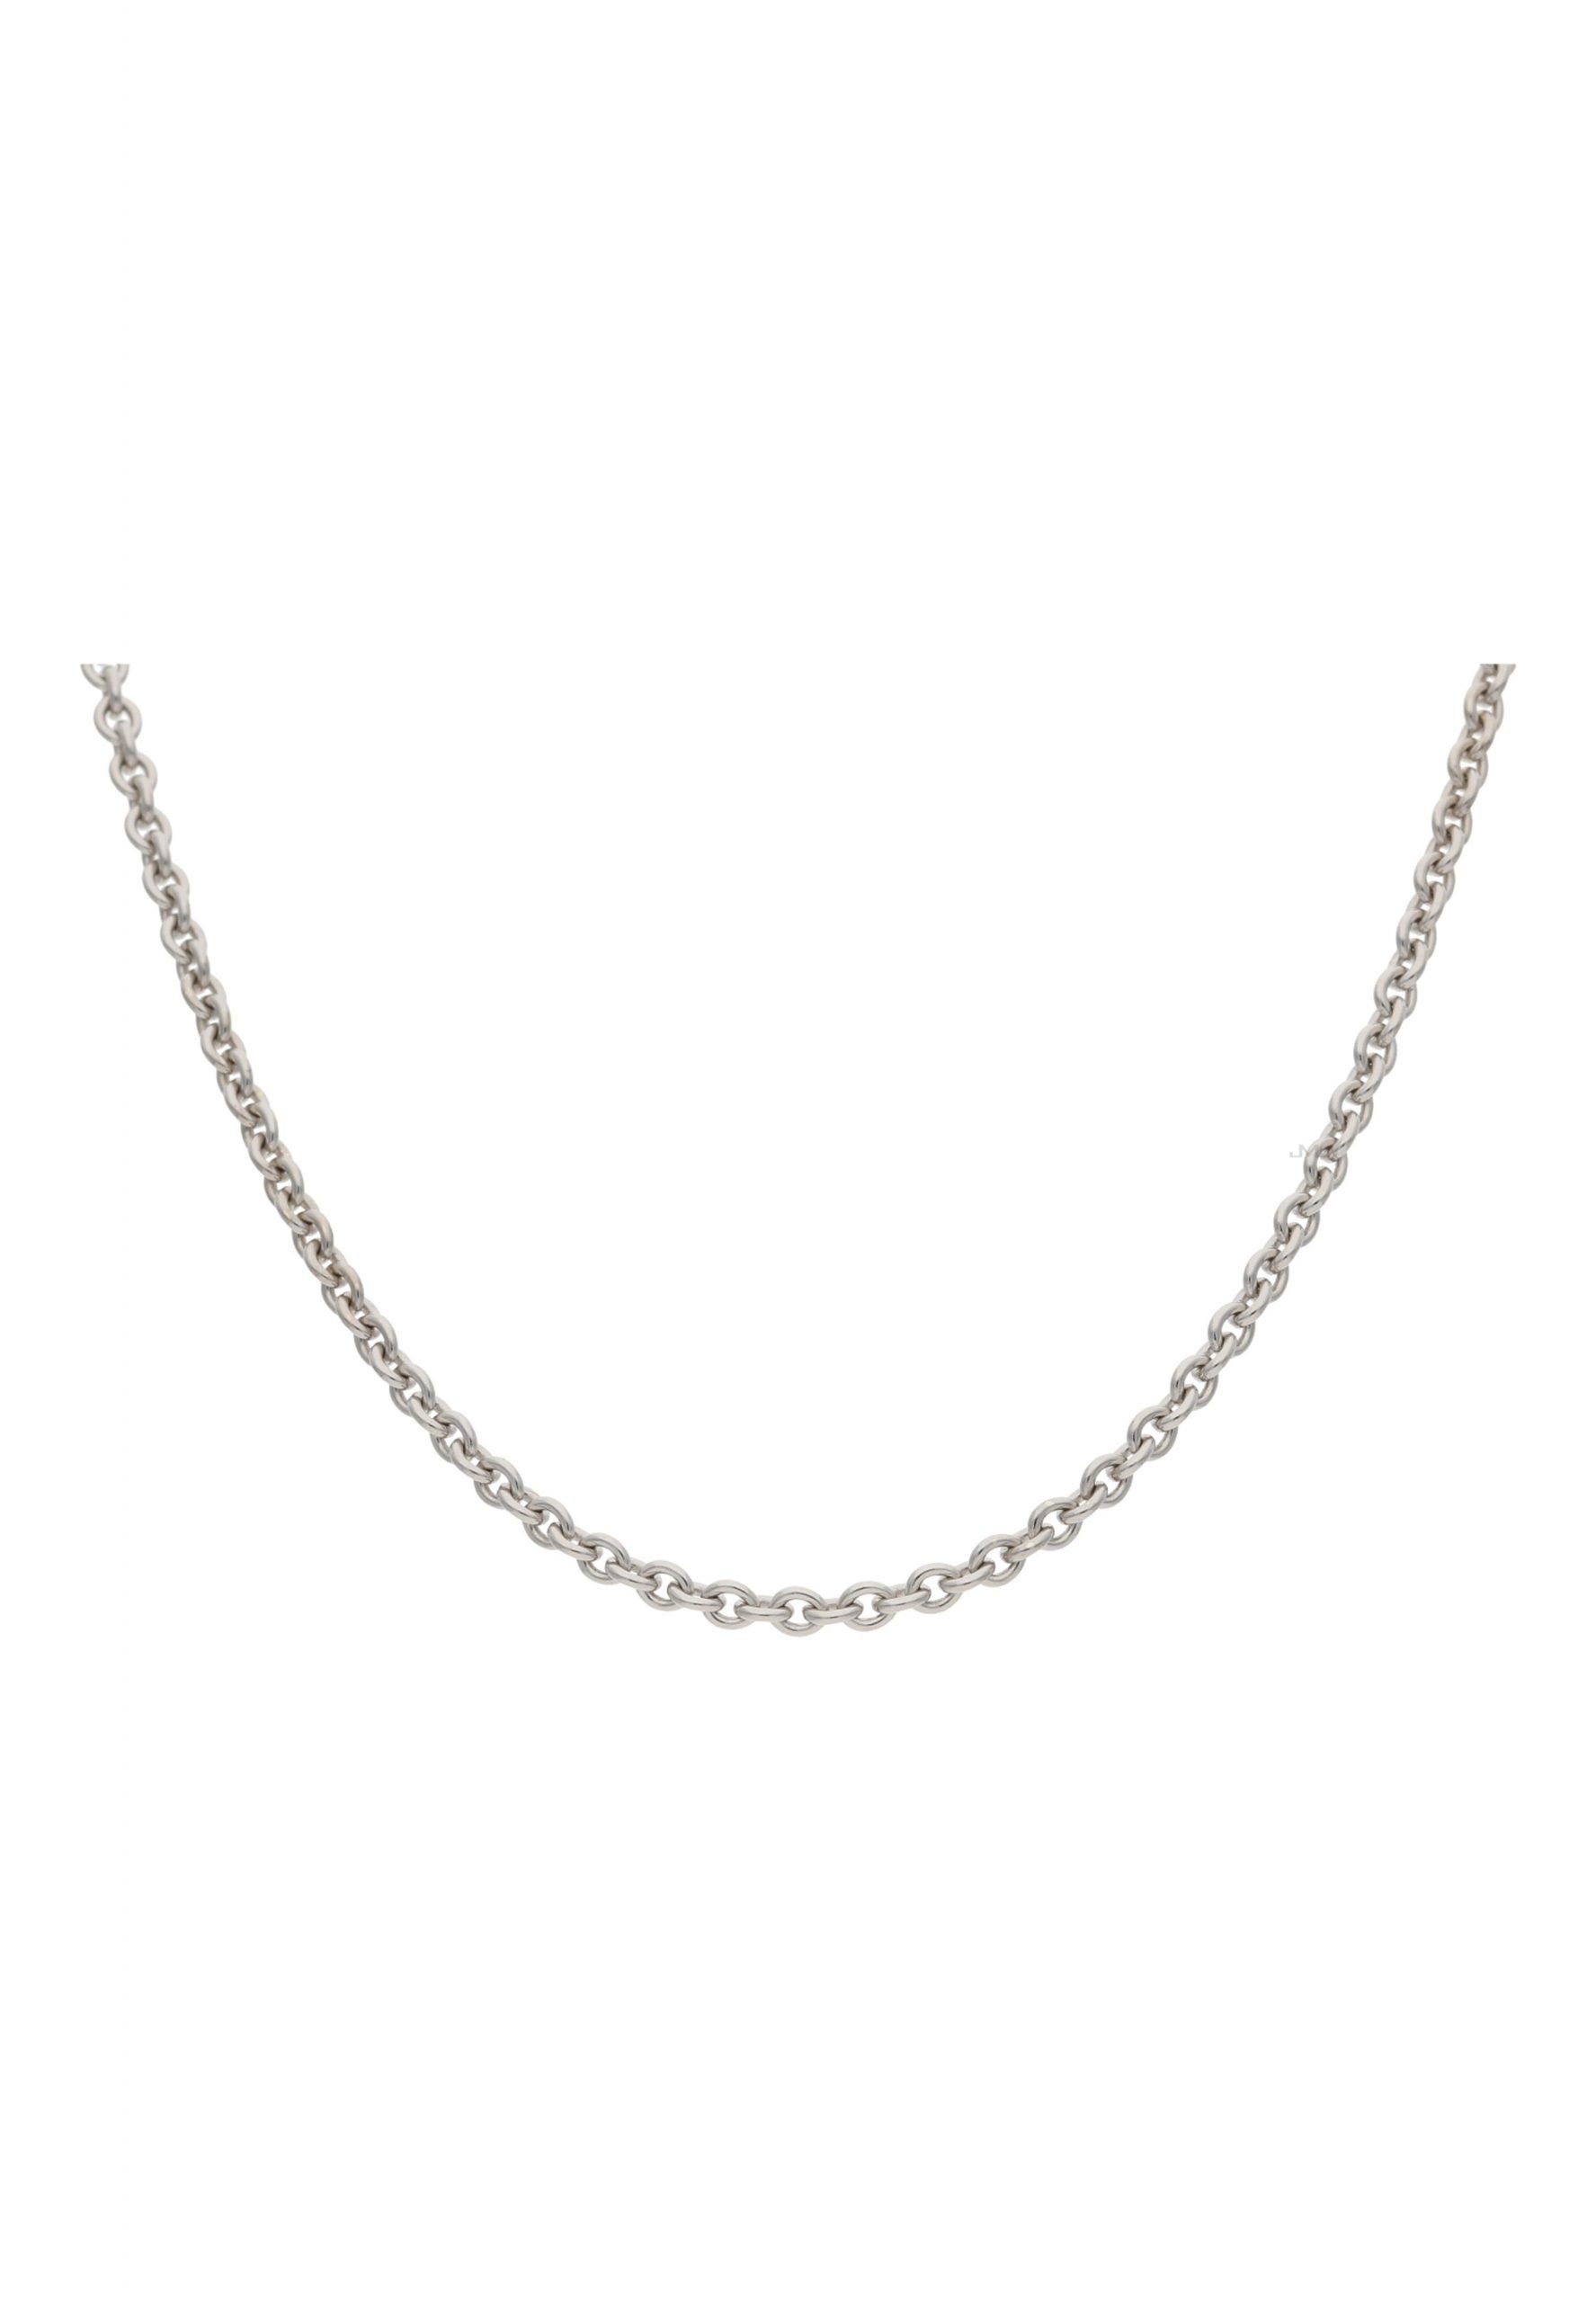 Damen inkl. Silber (1-tlg), Silberkette Halskette JuwelmaLux Halskette 925/000, Rundankerkette Silber Schmuckschachtel